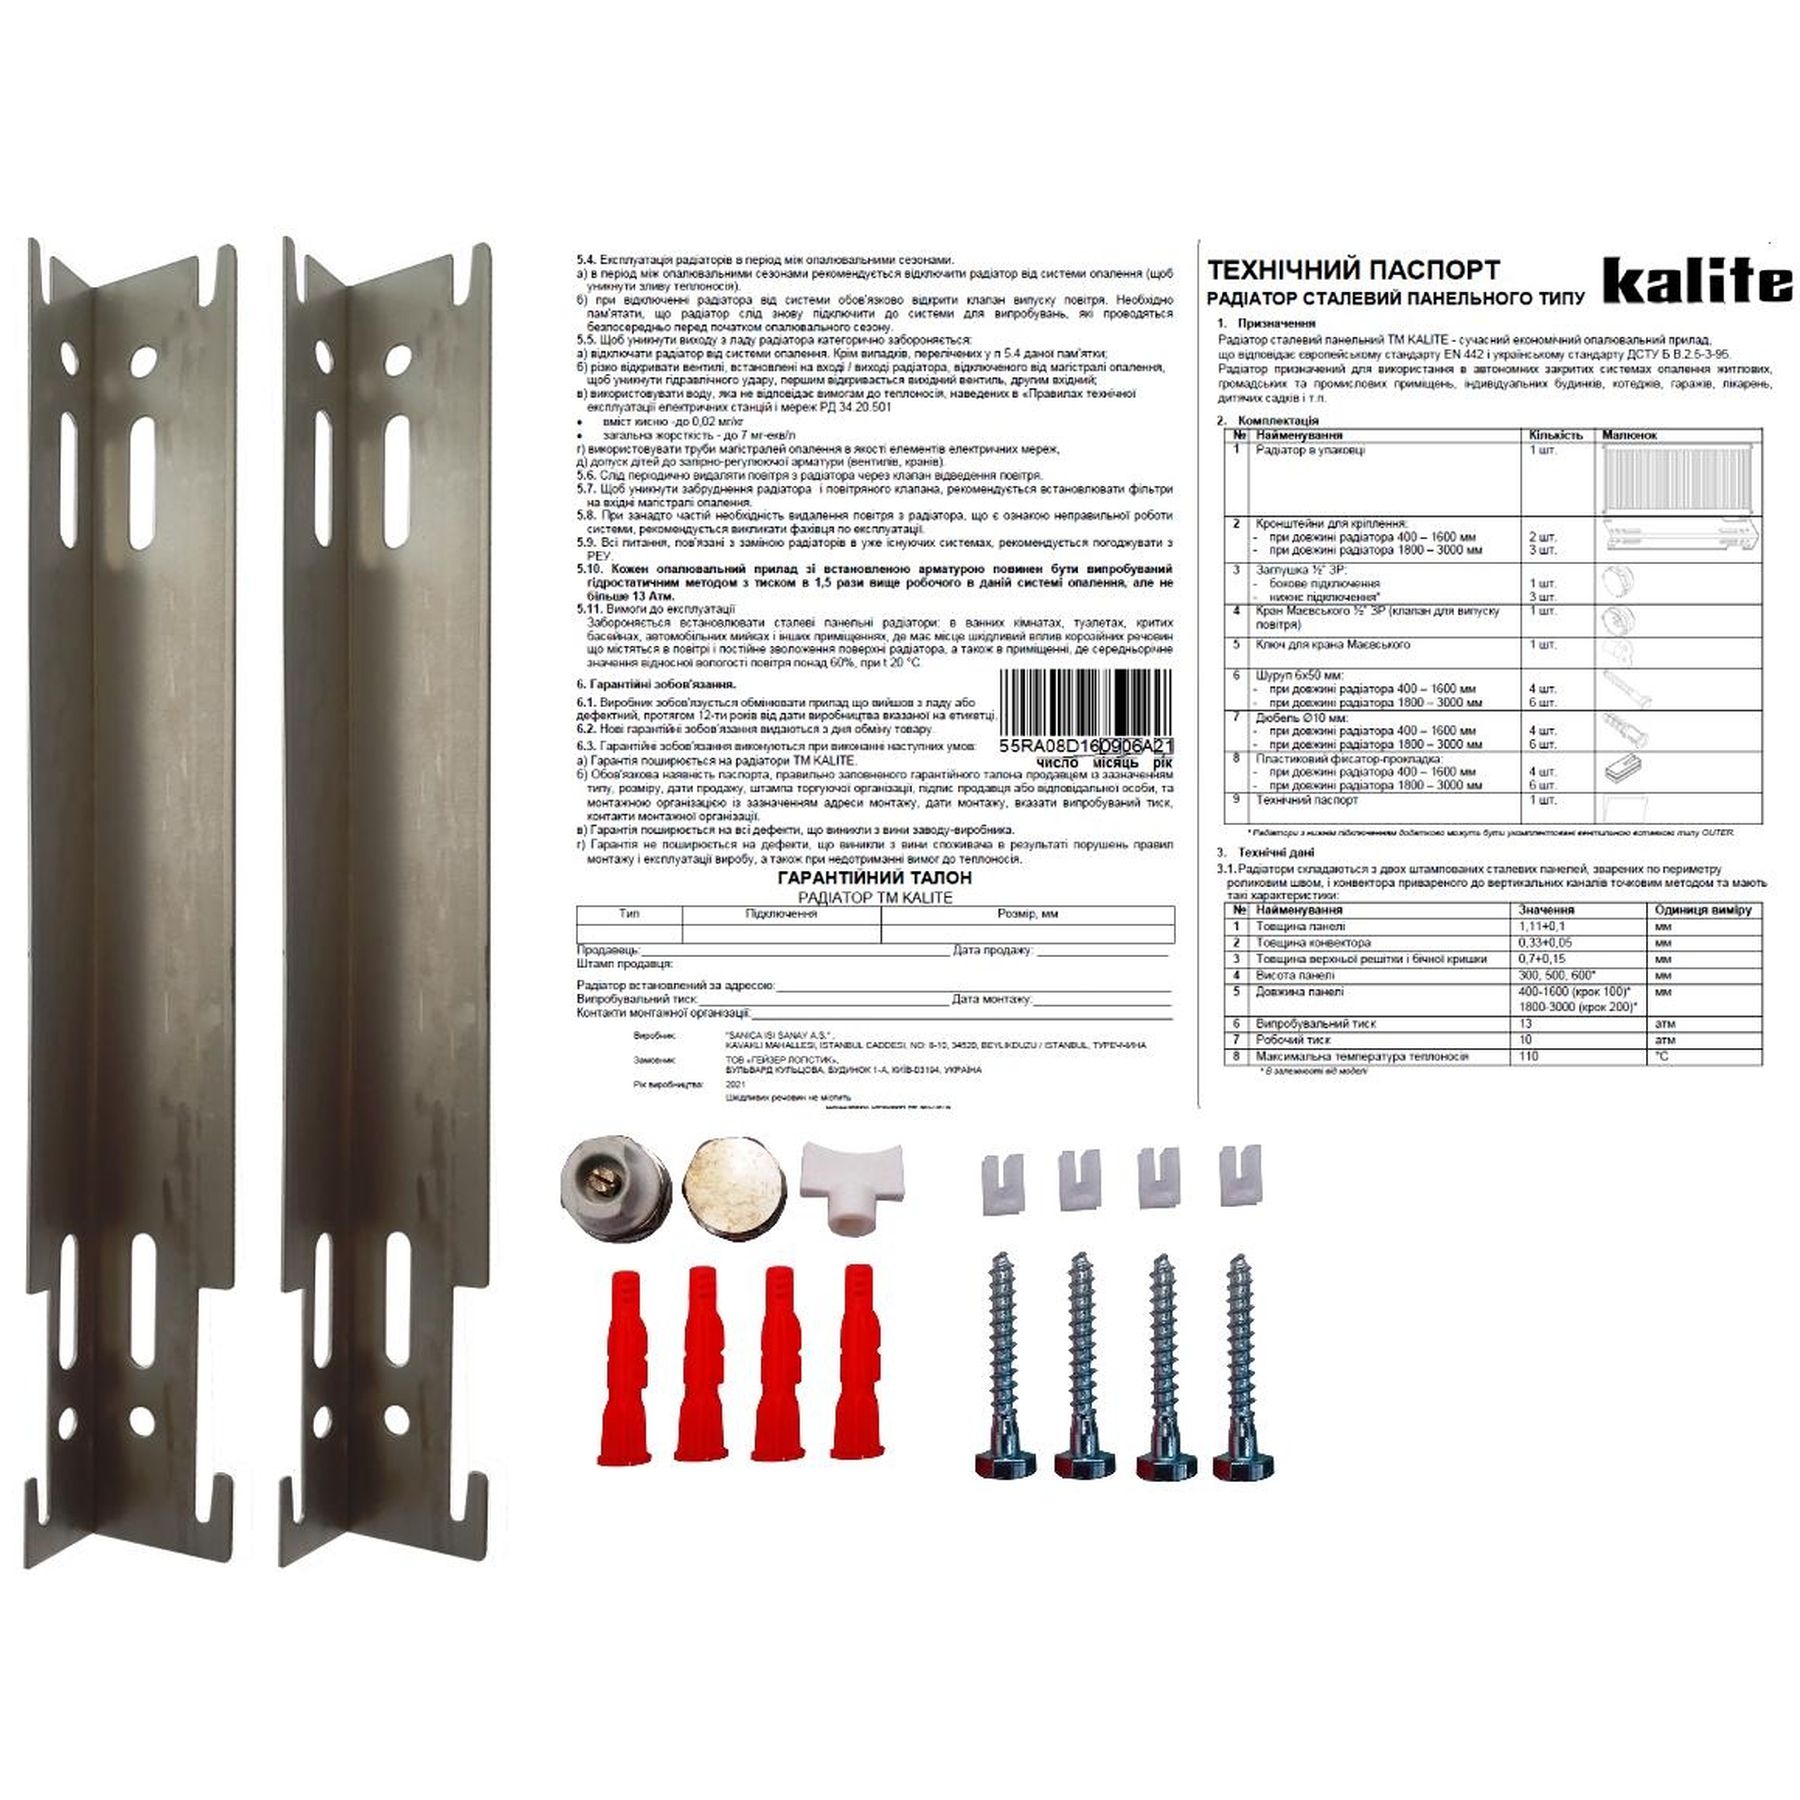 Радиатор для отопления Kalite 11 бок 500x500 цена 1519 грн - фотография 2